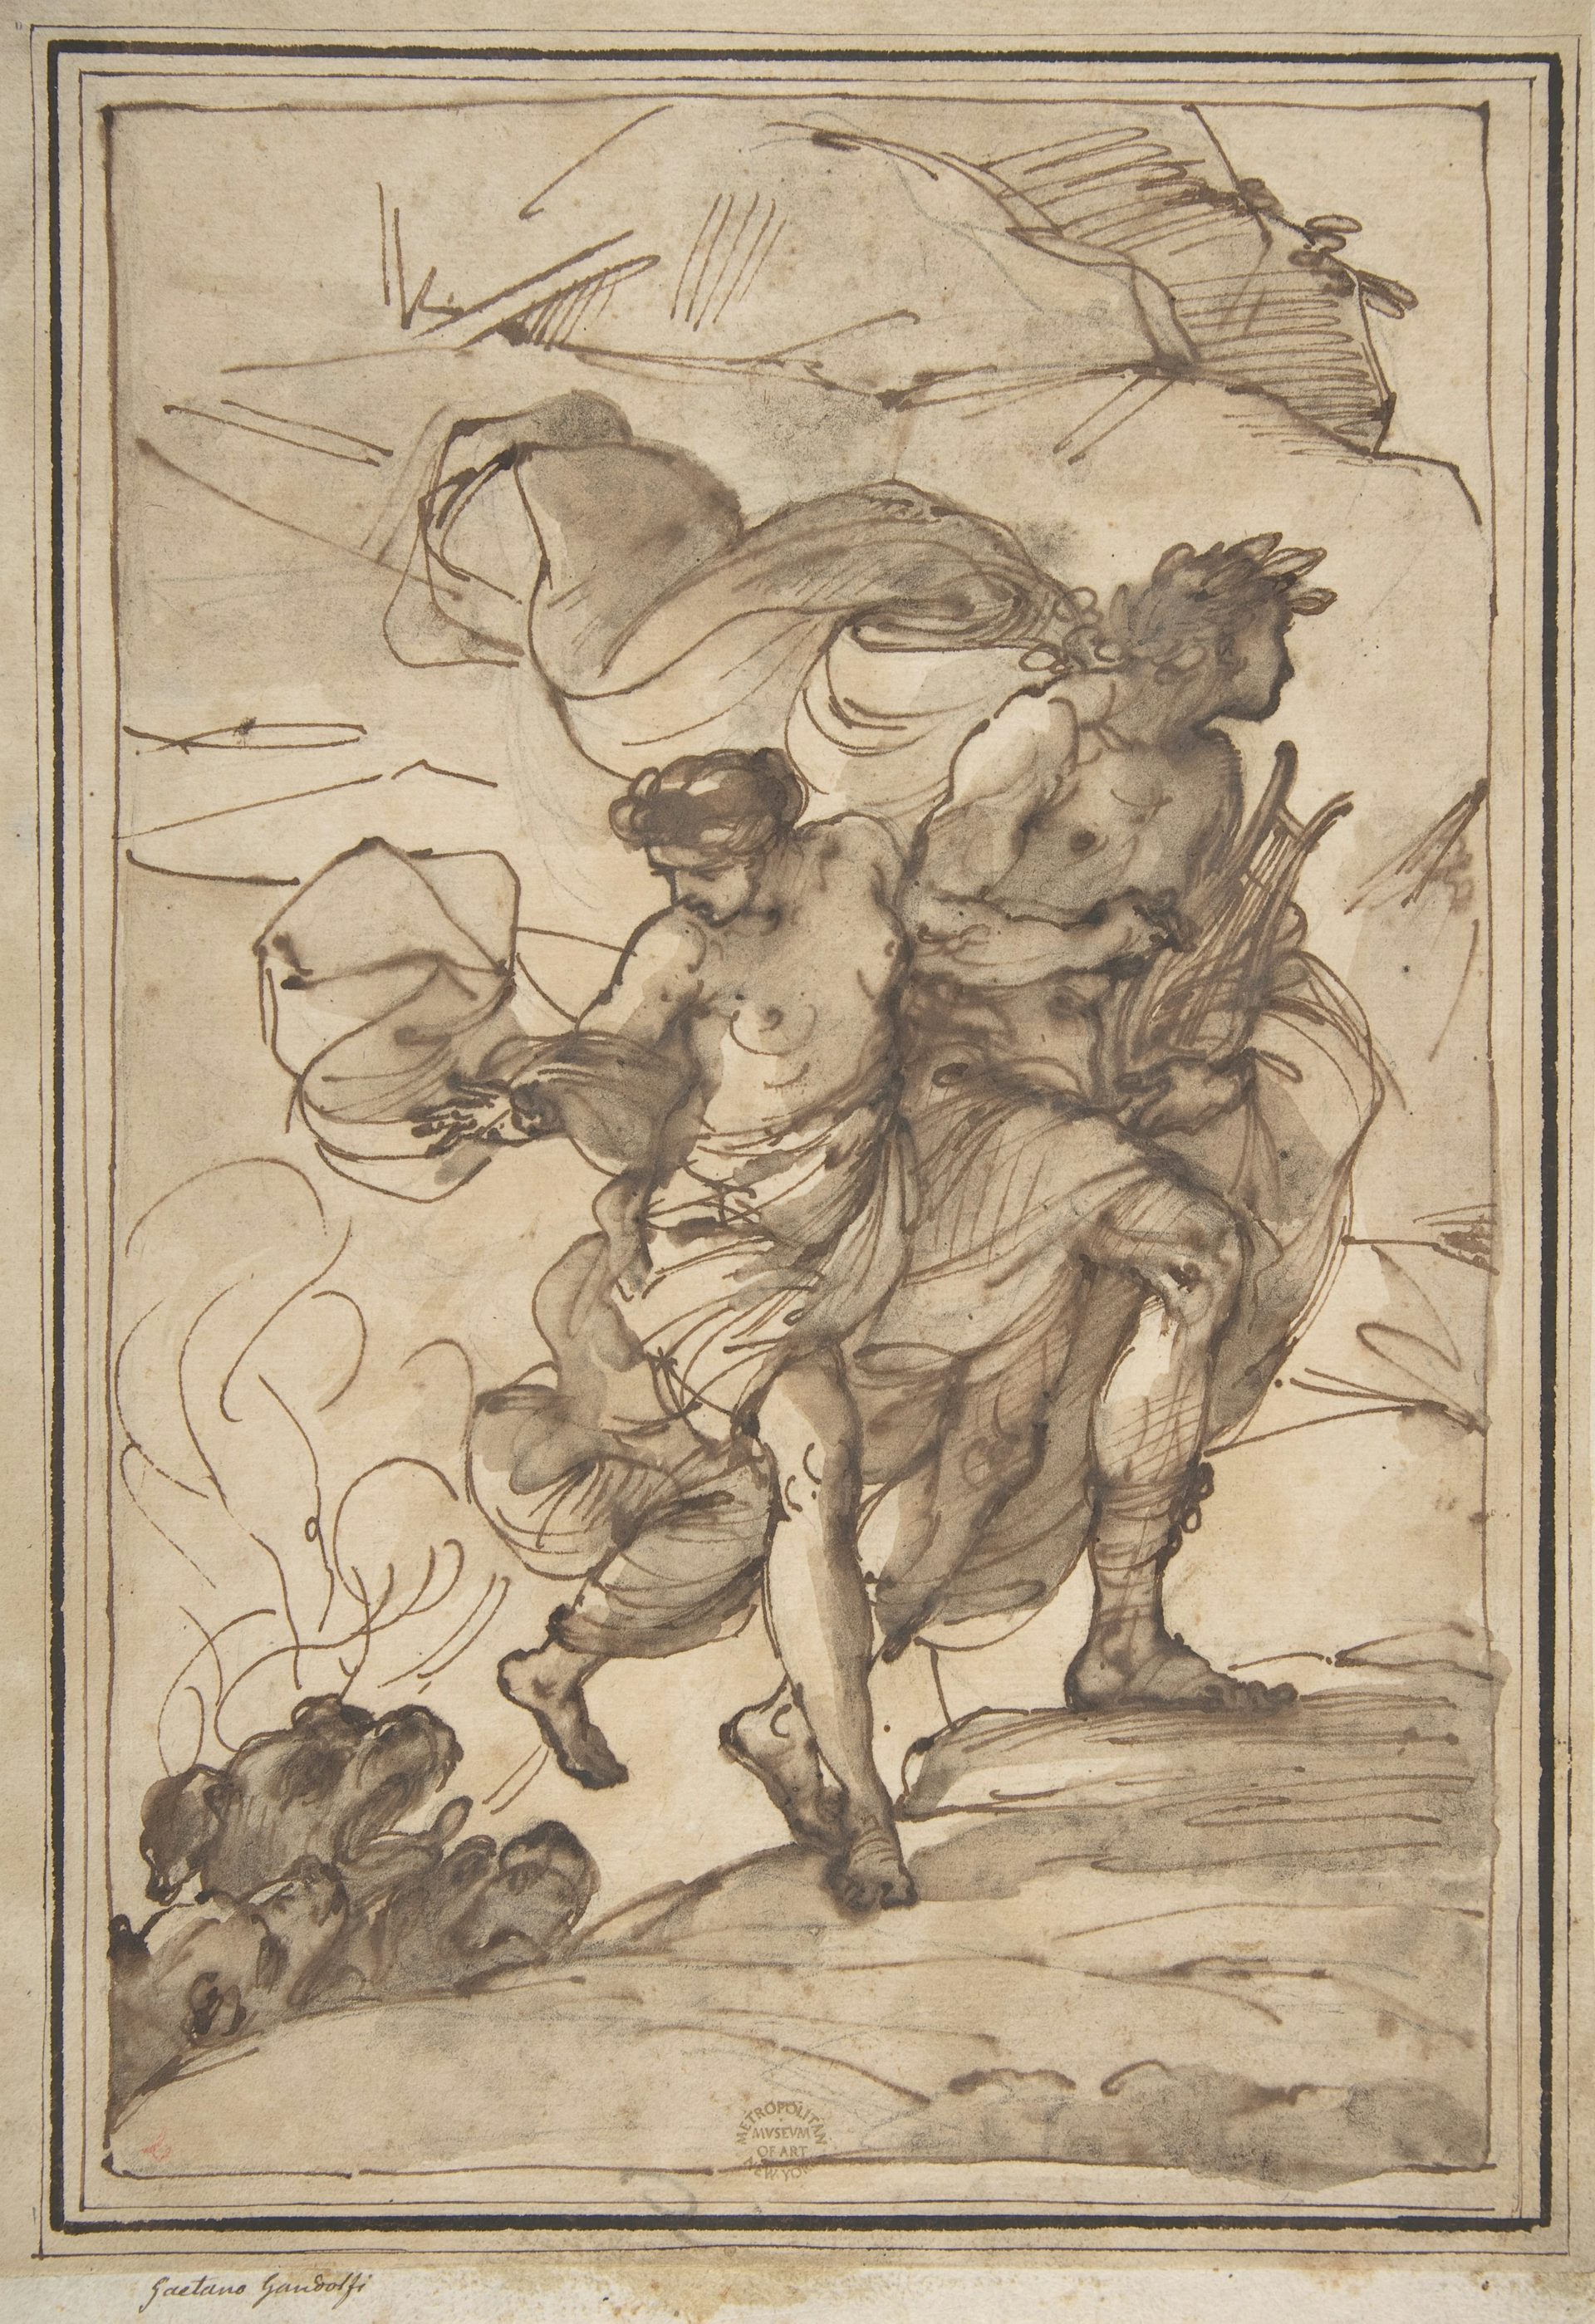 Orpheus and Eurydice, attributed to Filippo Pedrini